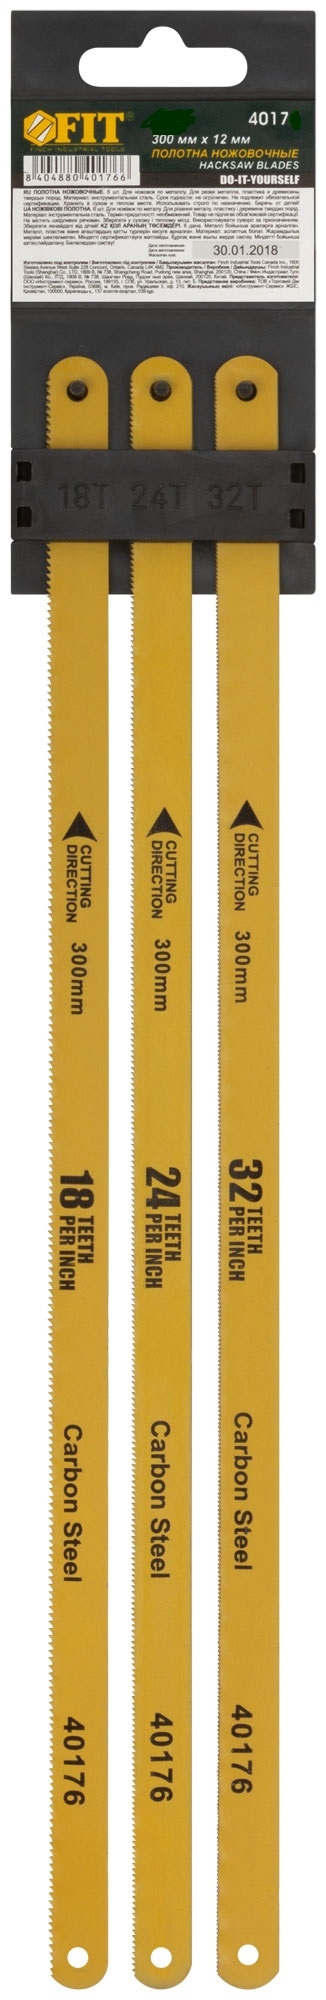 Полотна ножовочные по металлу, 300 мм, (18ТPI+24ТPI+32ТPI/20Cr ), 3 шт. FIT 40175 полотна ножовочные по металлу 300 мм 18тpi 24тpi 32тpi 20cr 6 шт fit 40176